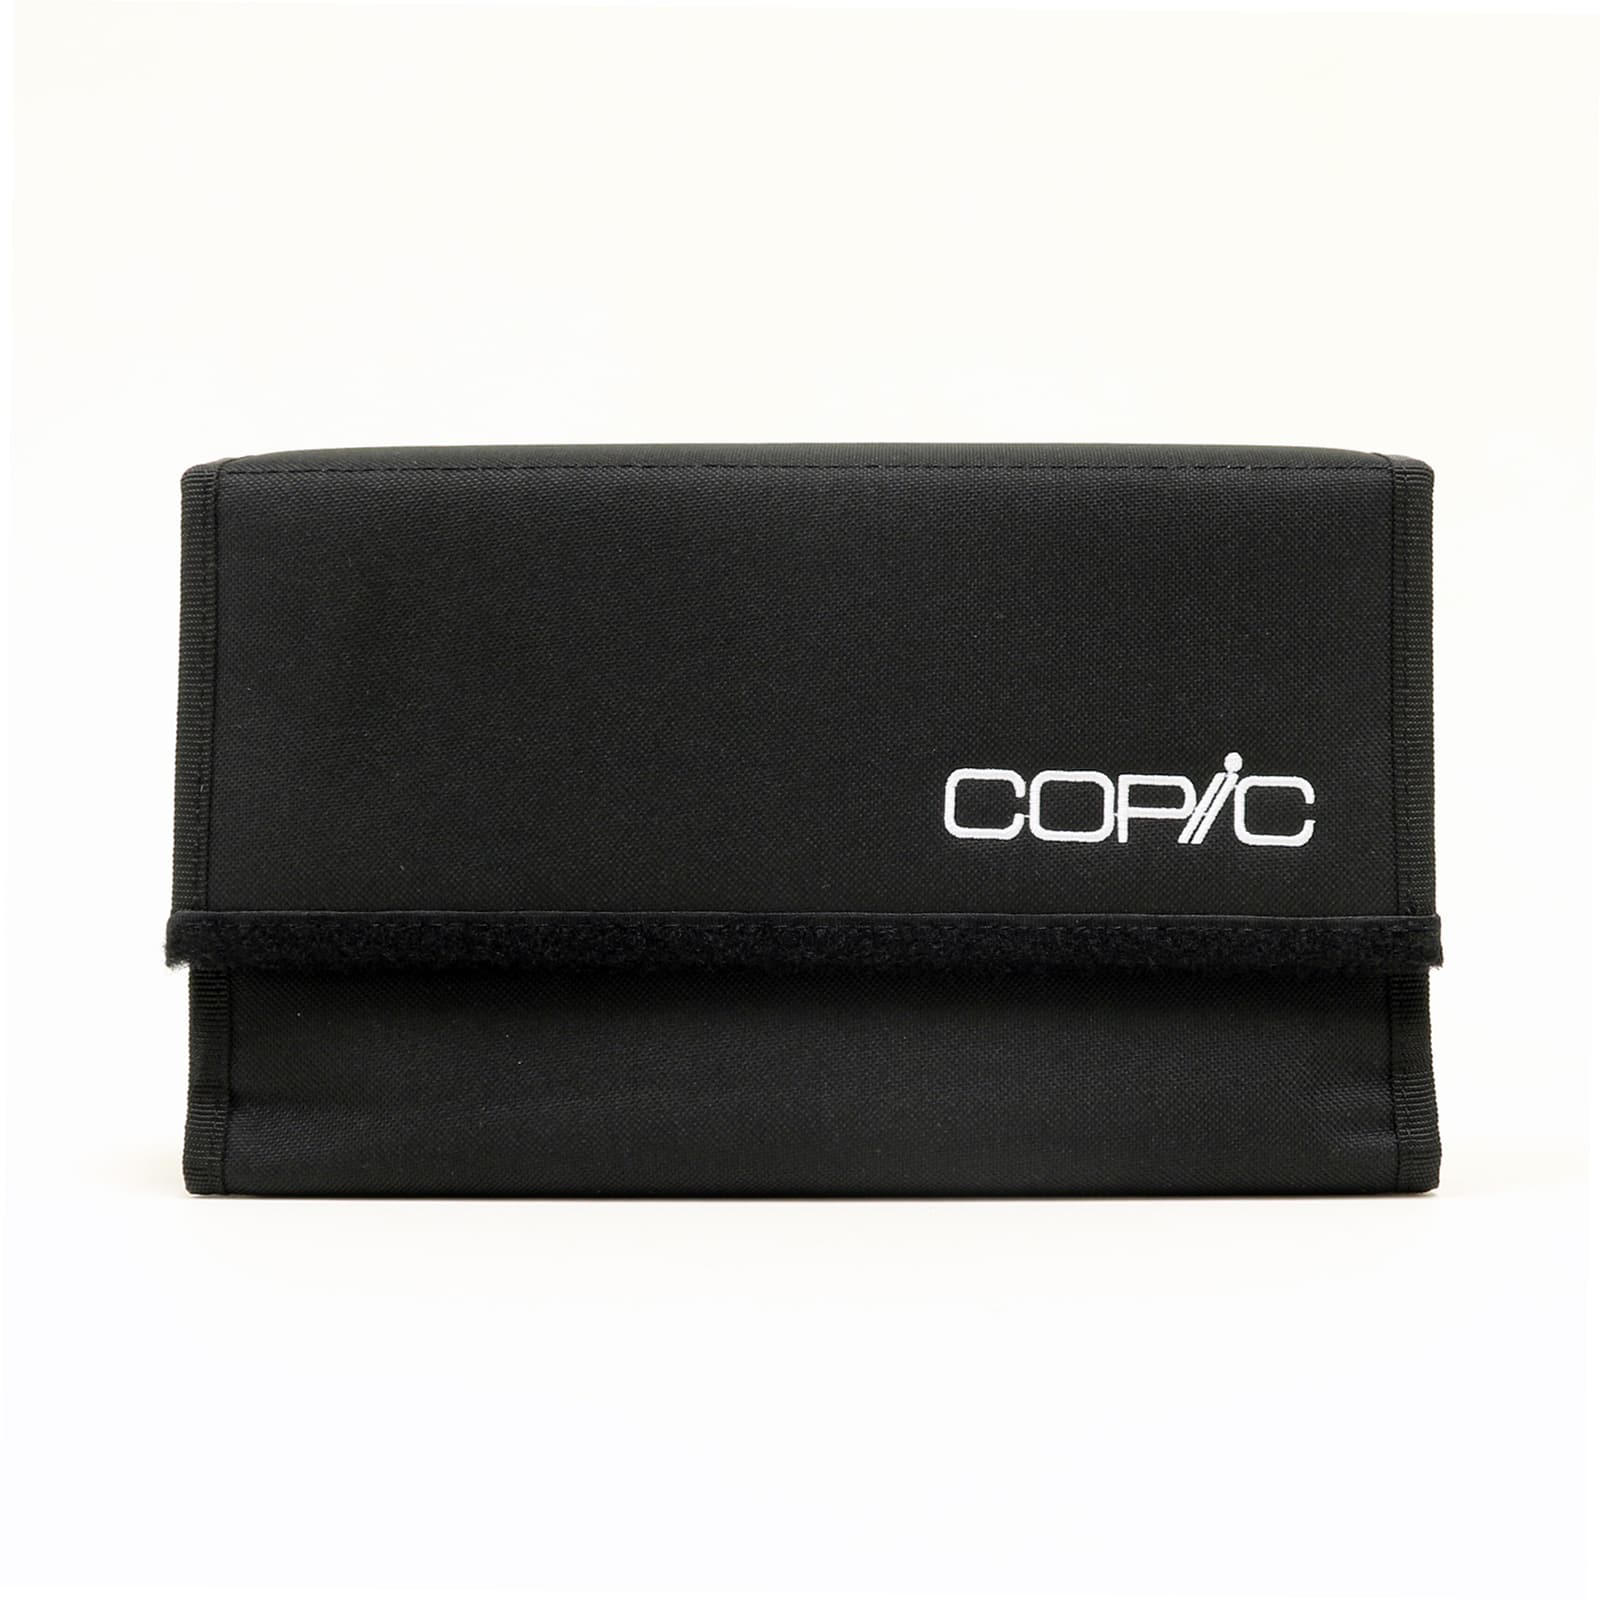 Copic&#xAE; 24 Marker Empty Wallet Case